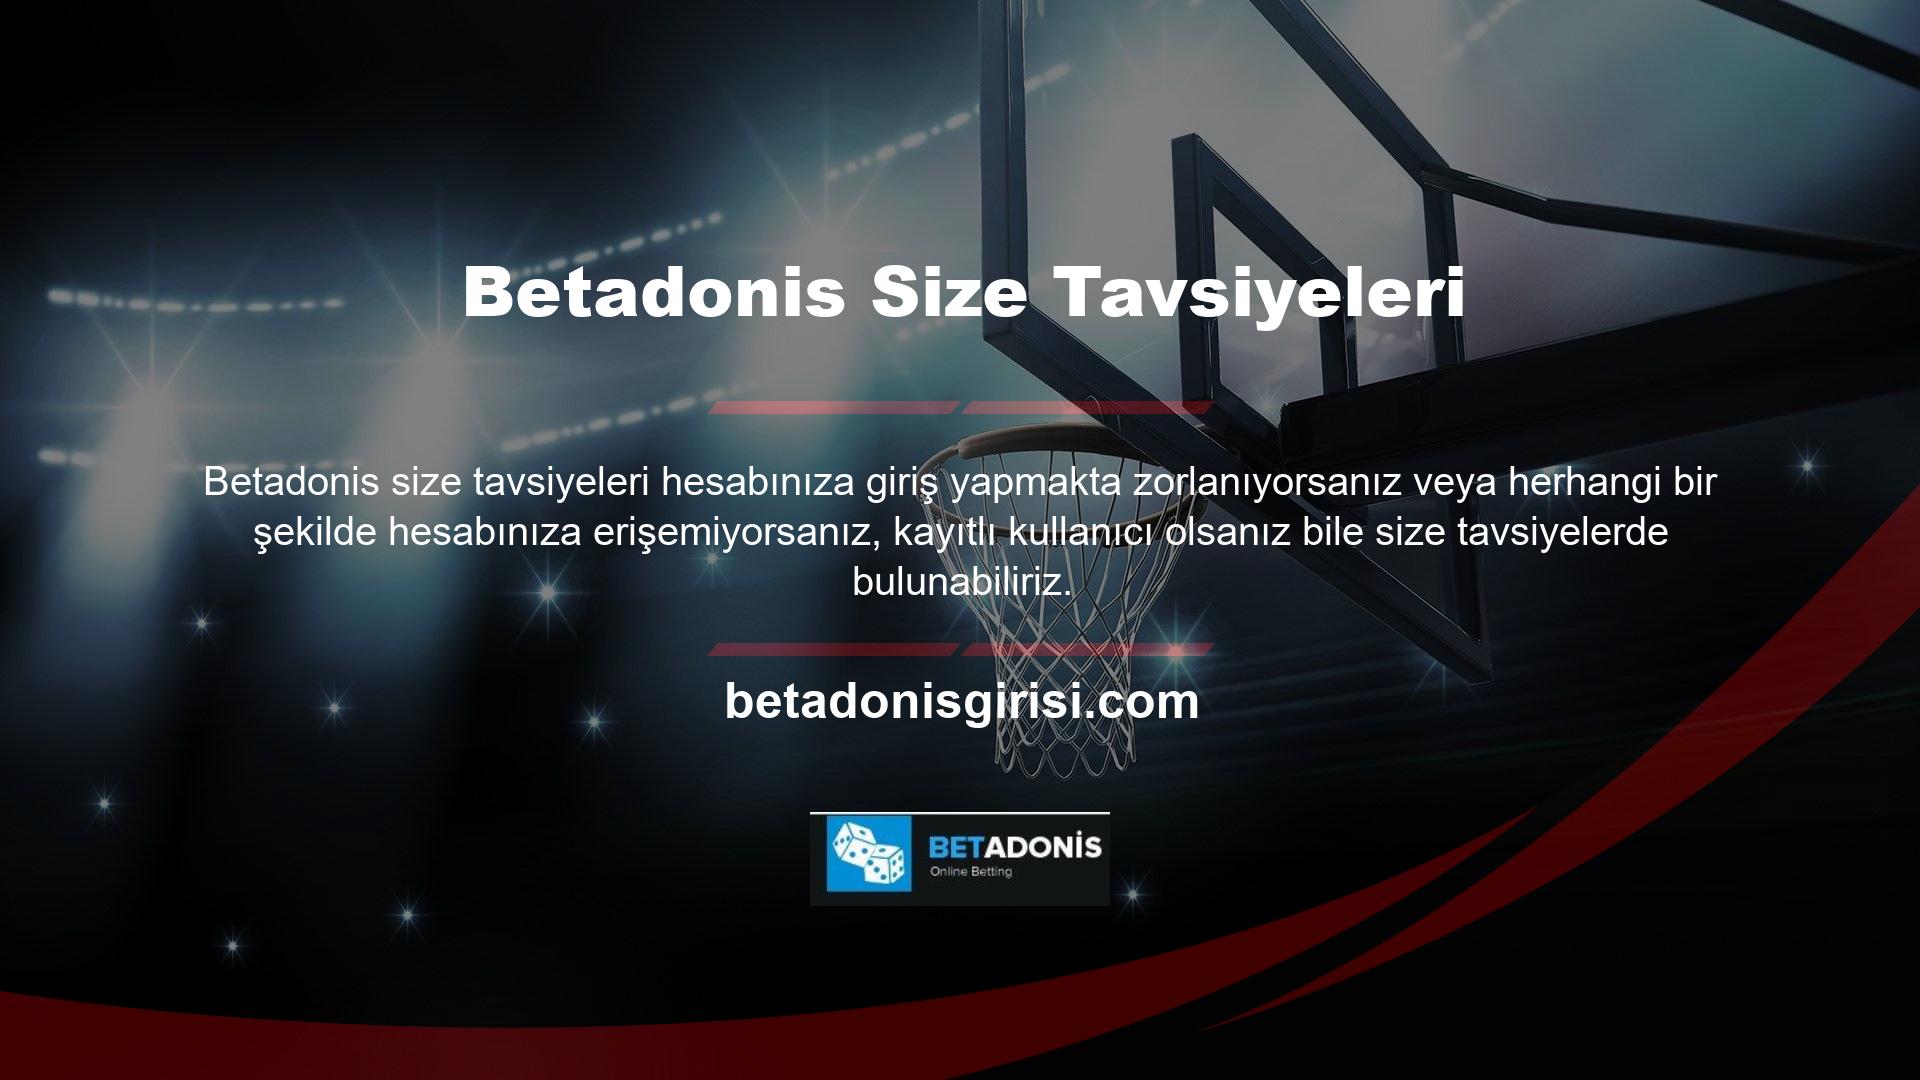 Betadonis hesabınıza giriş yapamamanızın nedenlerinden biri web sitesinin Betadonis Sosyal Medya Kullanım Koşullarına uymamasıdır